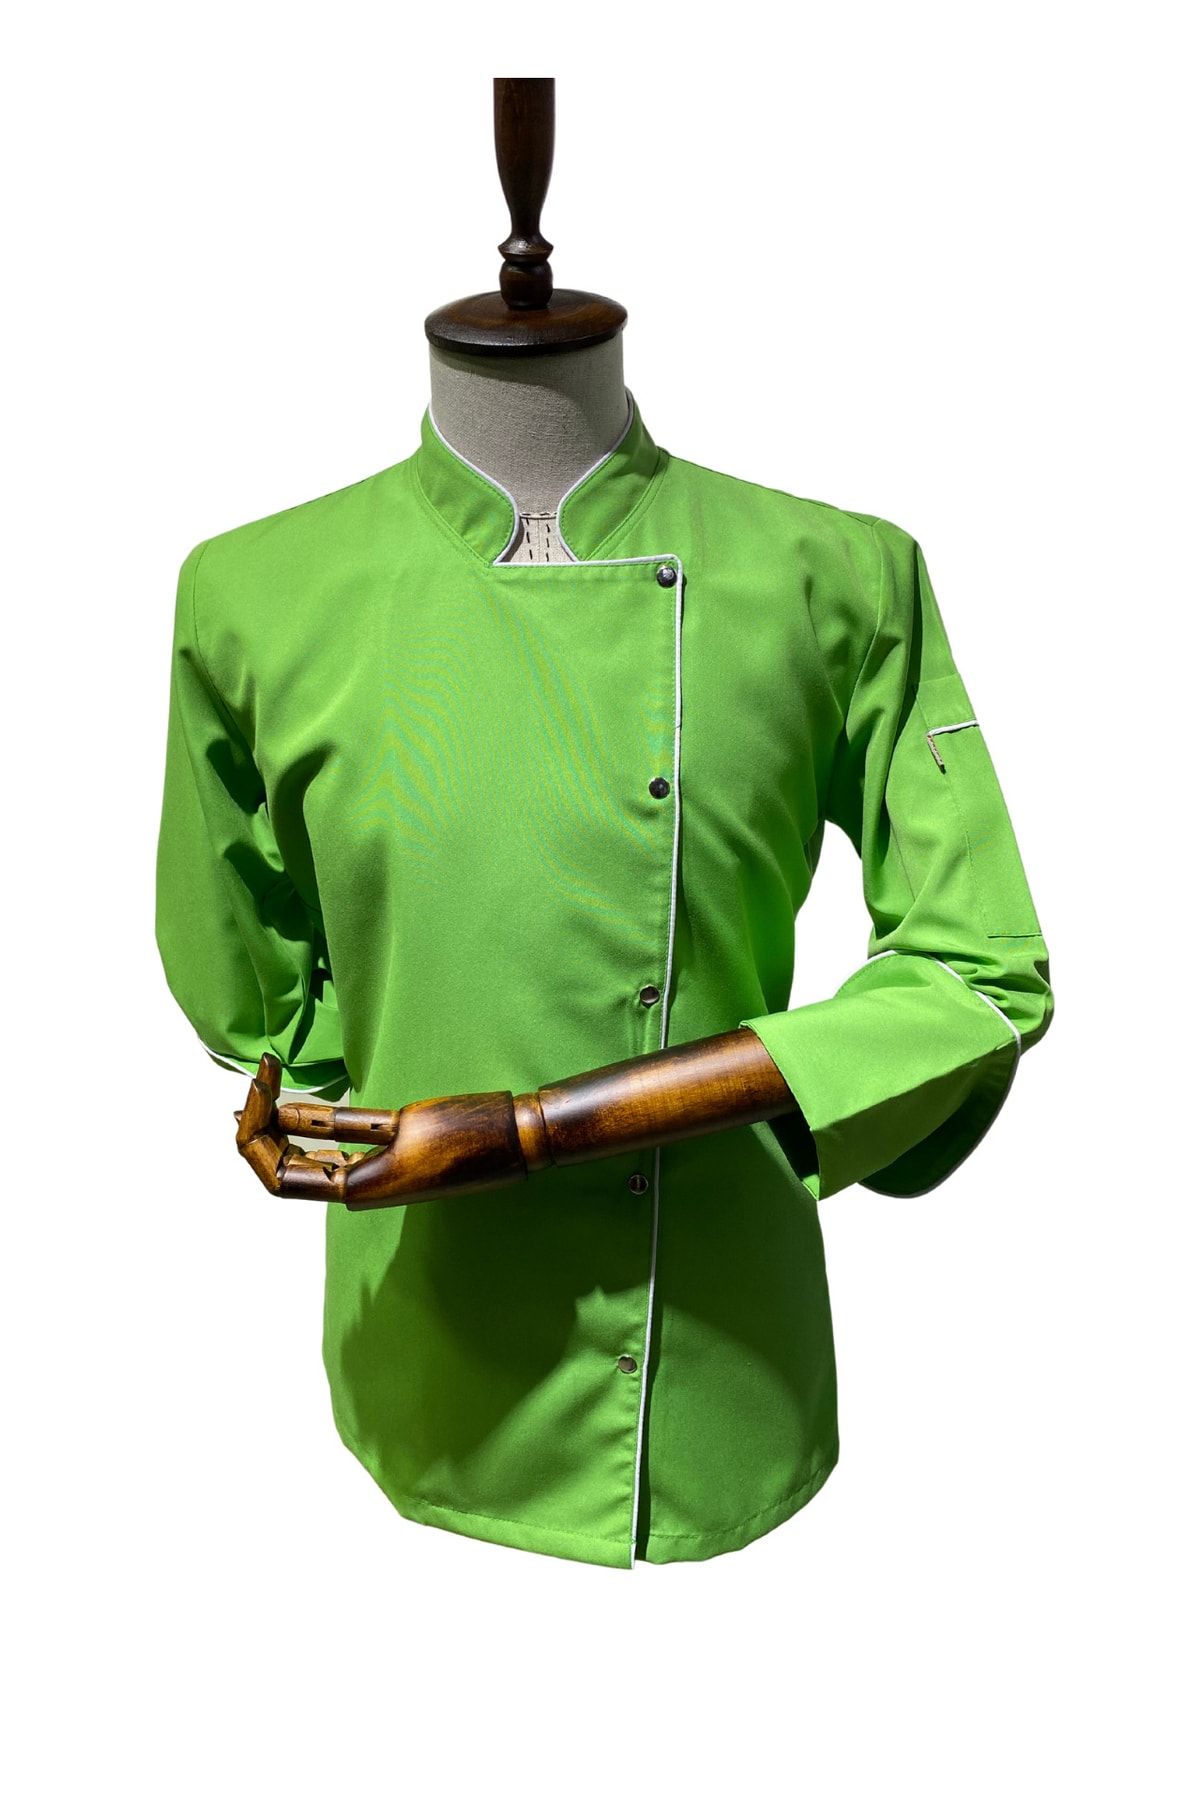 APEX SEKTOREL Kadın Fıstık Yeşili Chef Aşçı Ceket + Hediye Bone